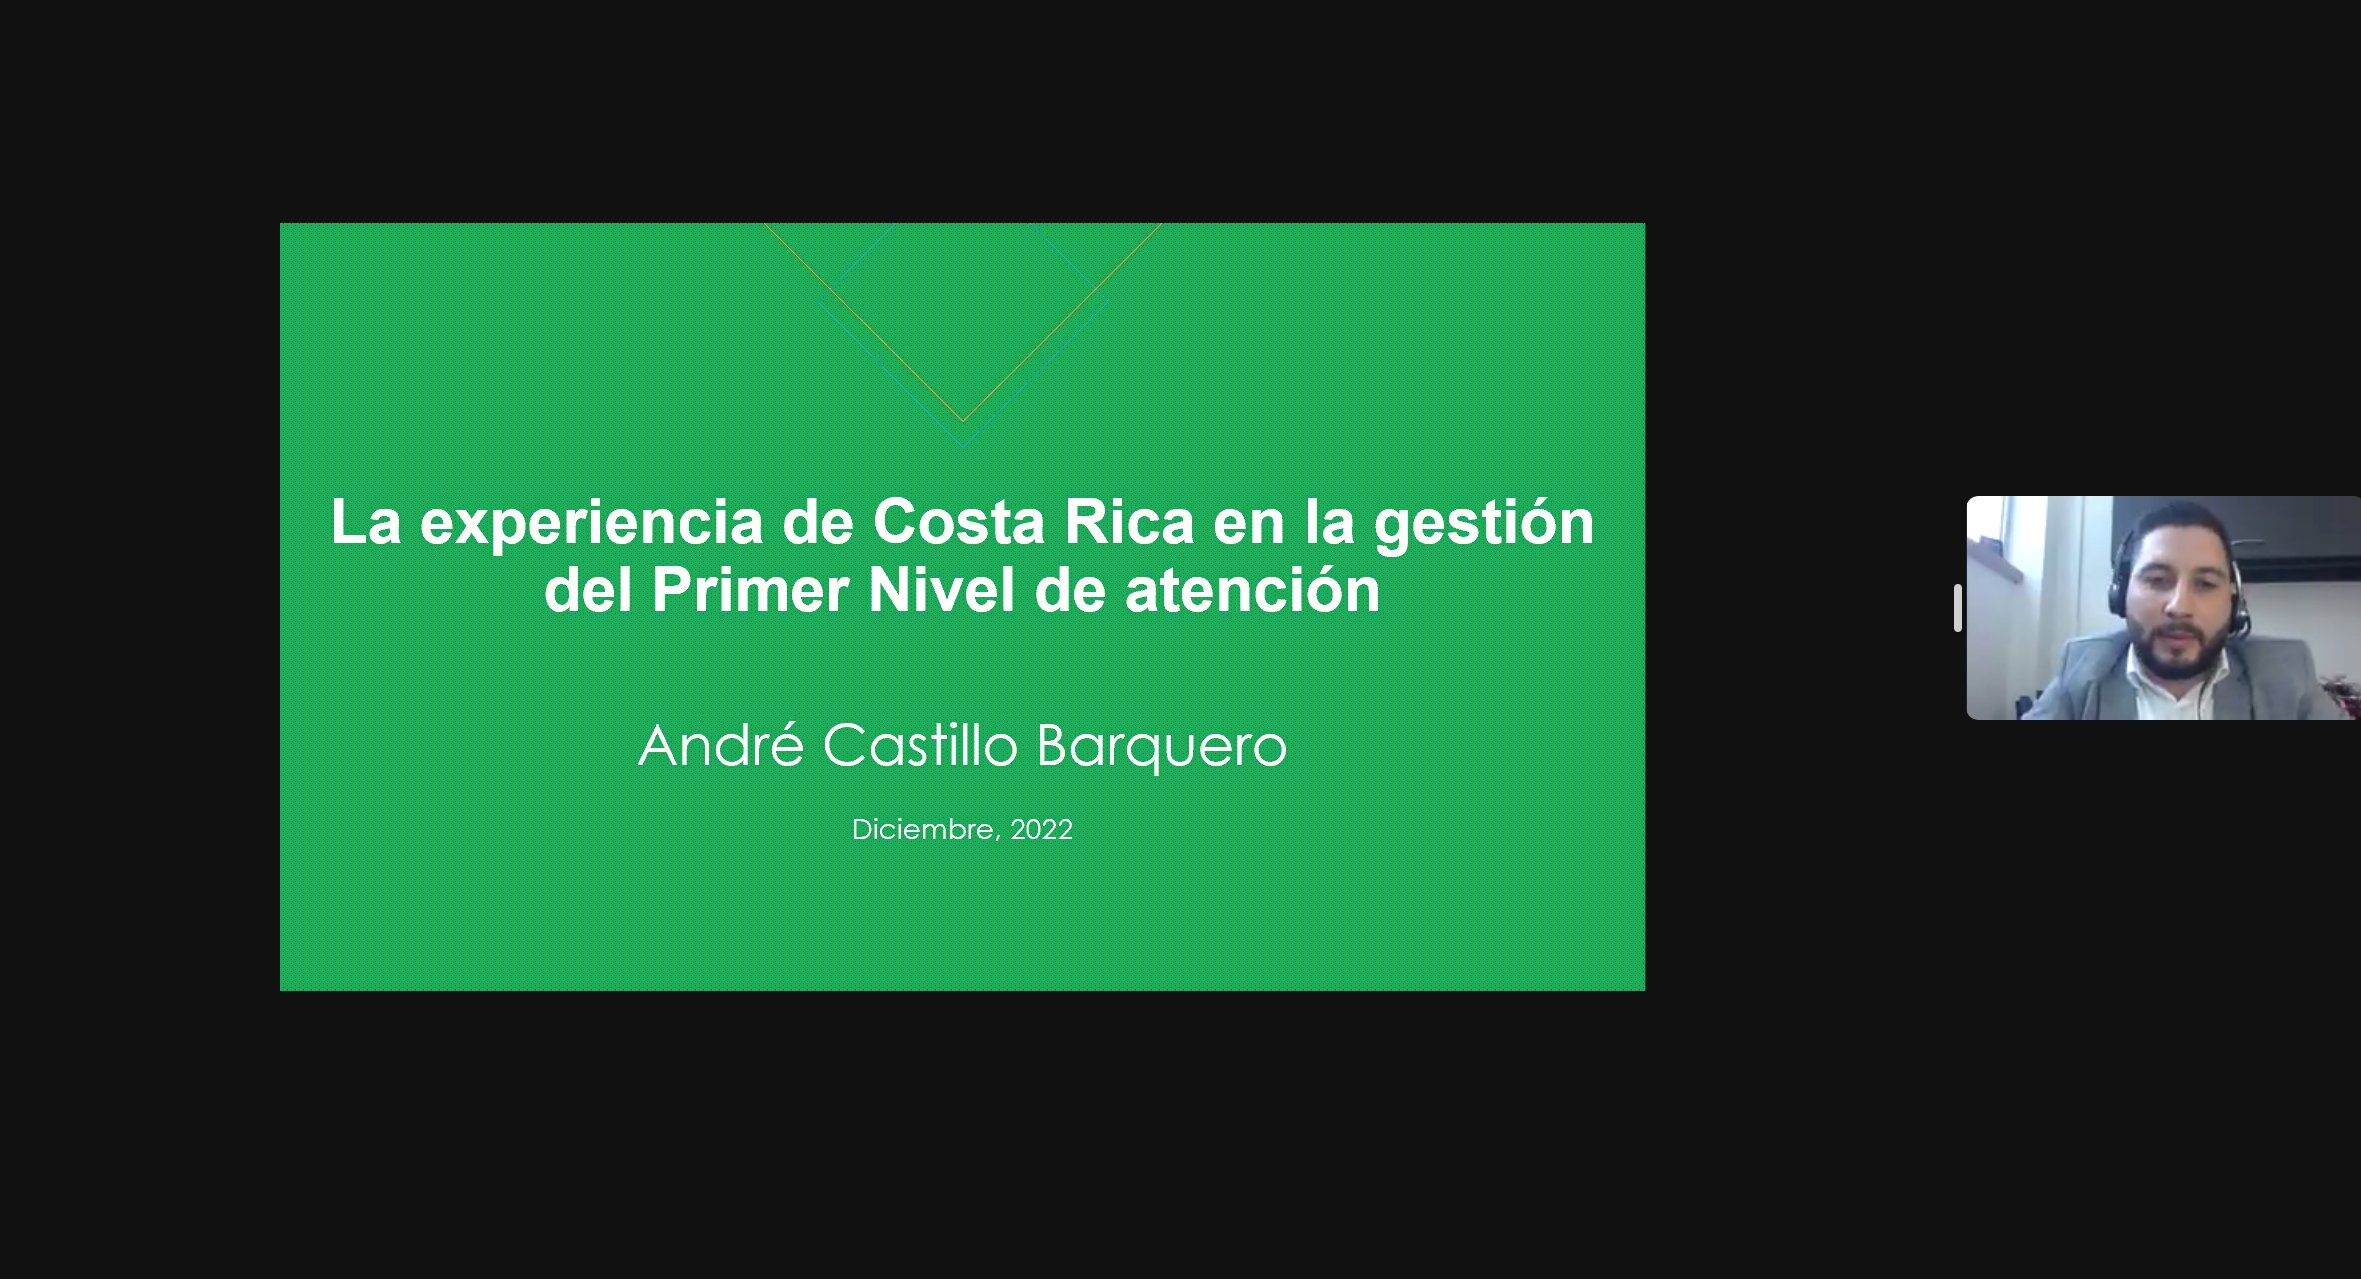 Dr. André Castillo